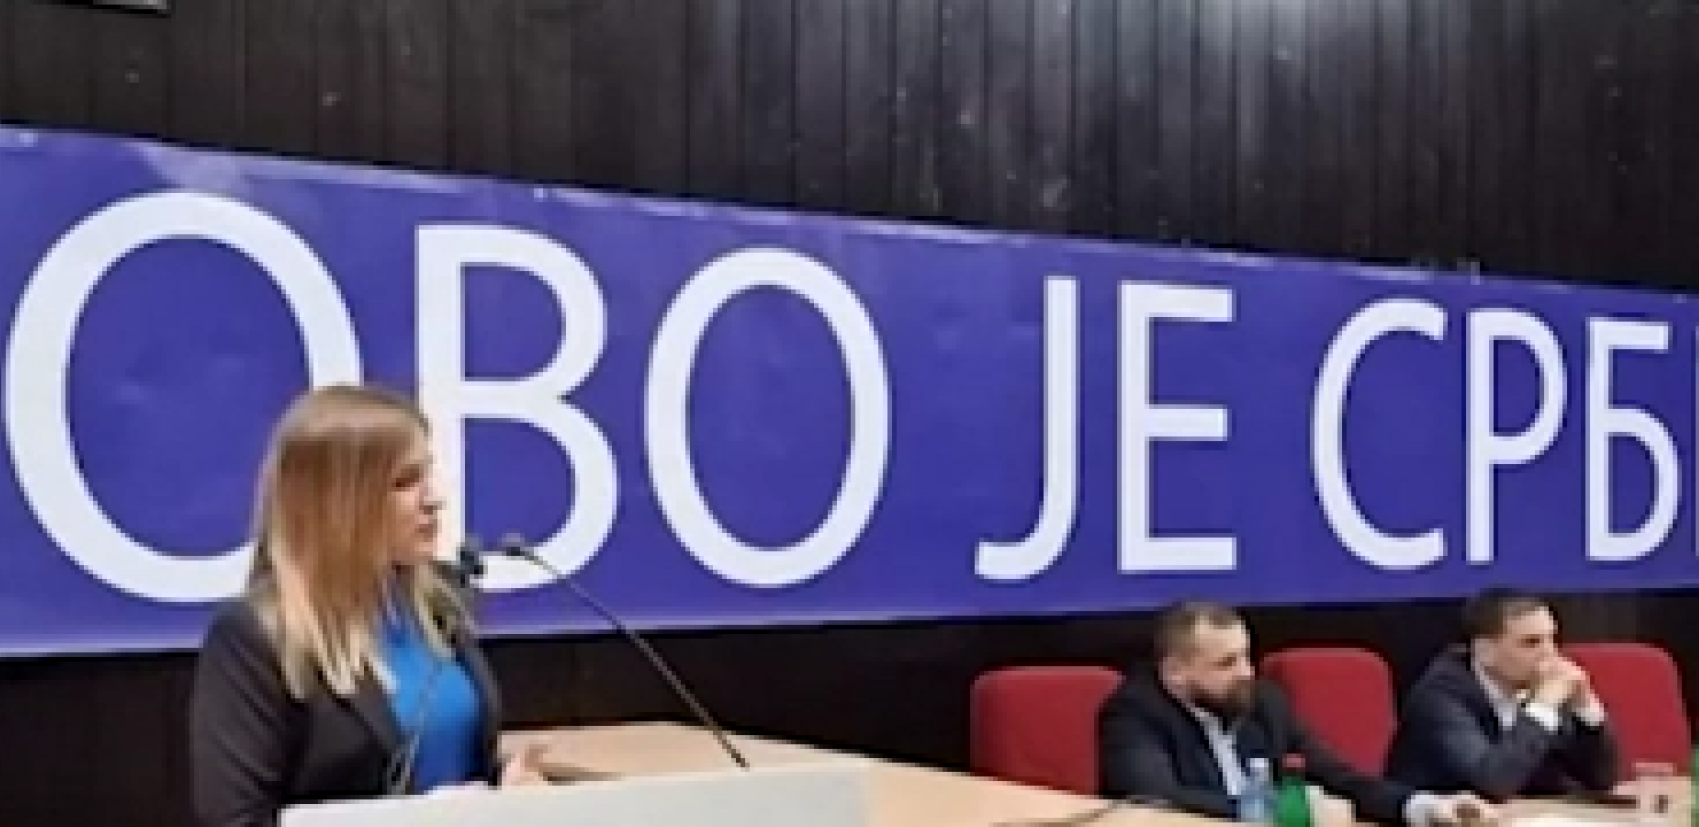 LEDENA KOFA PO JOVANOVIĆU I SAMARDŽIĆU Gospođa Stamenkovski žestoko ispozivala prethodnu vlast (VIDEO)